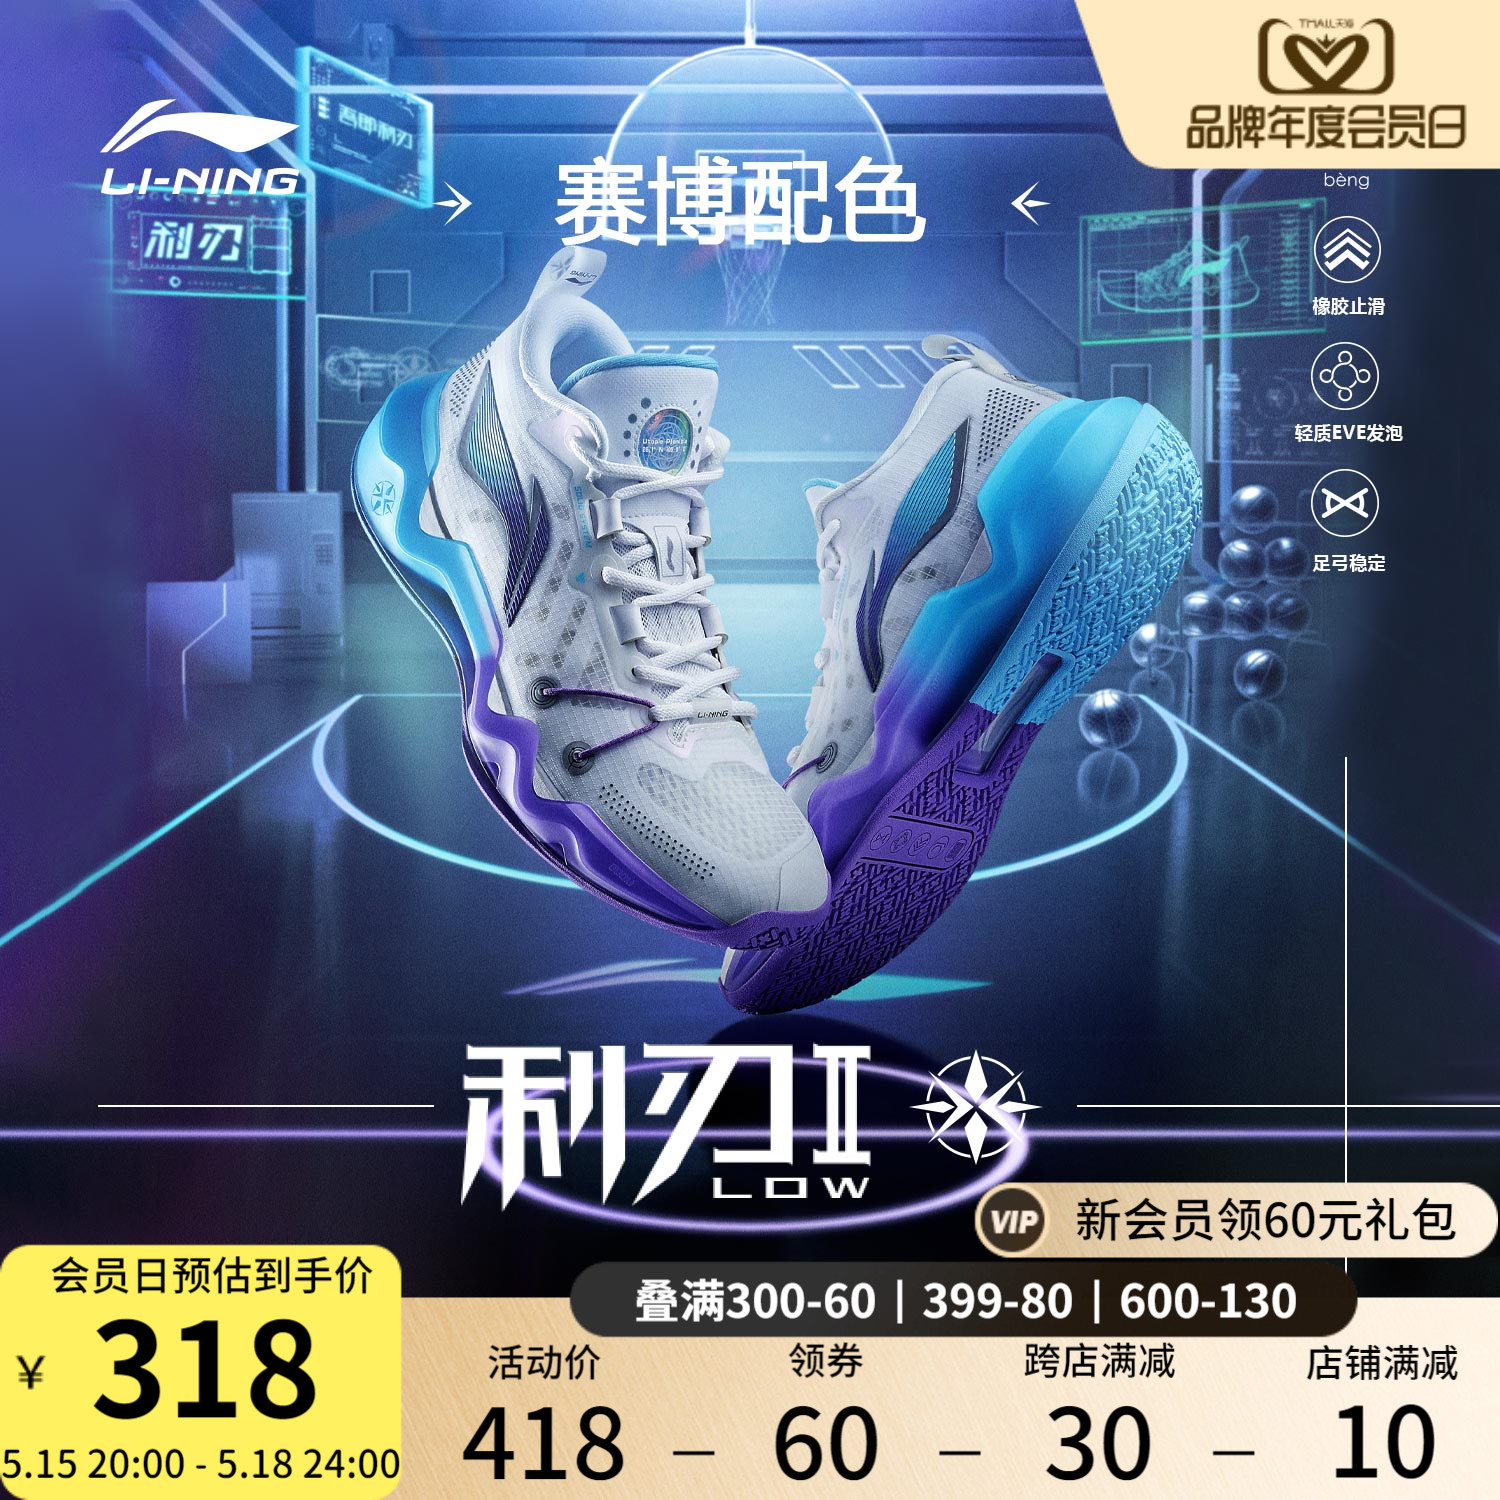 李宁beng科技利刃2.0LOW篮球鞋